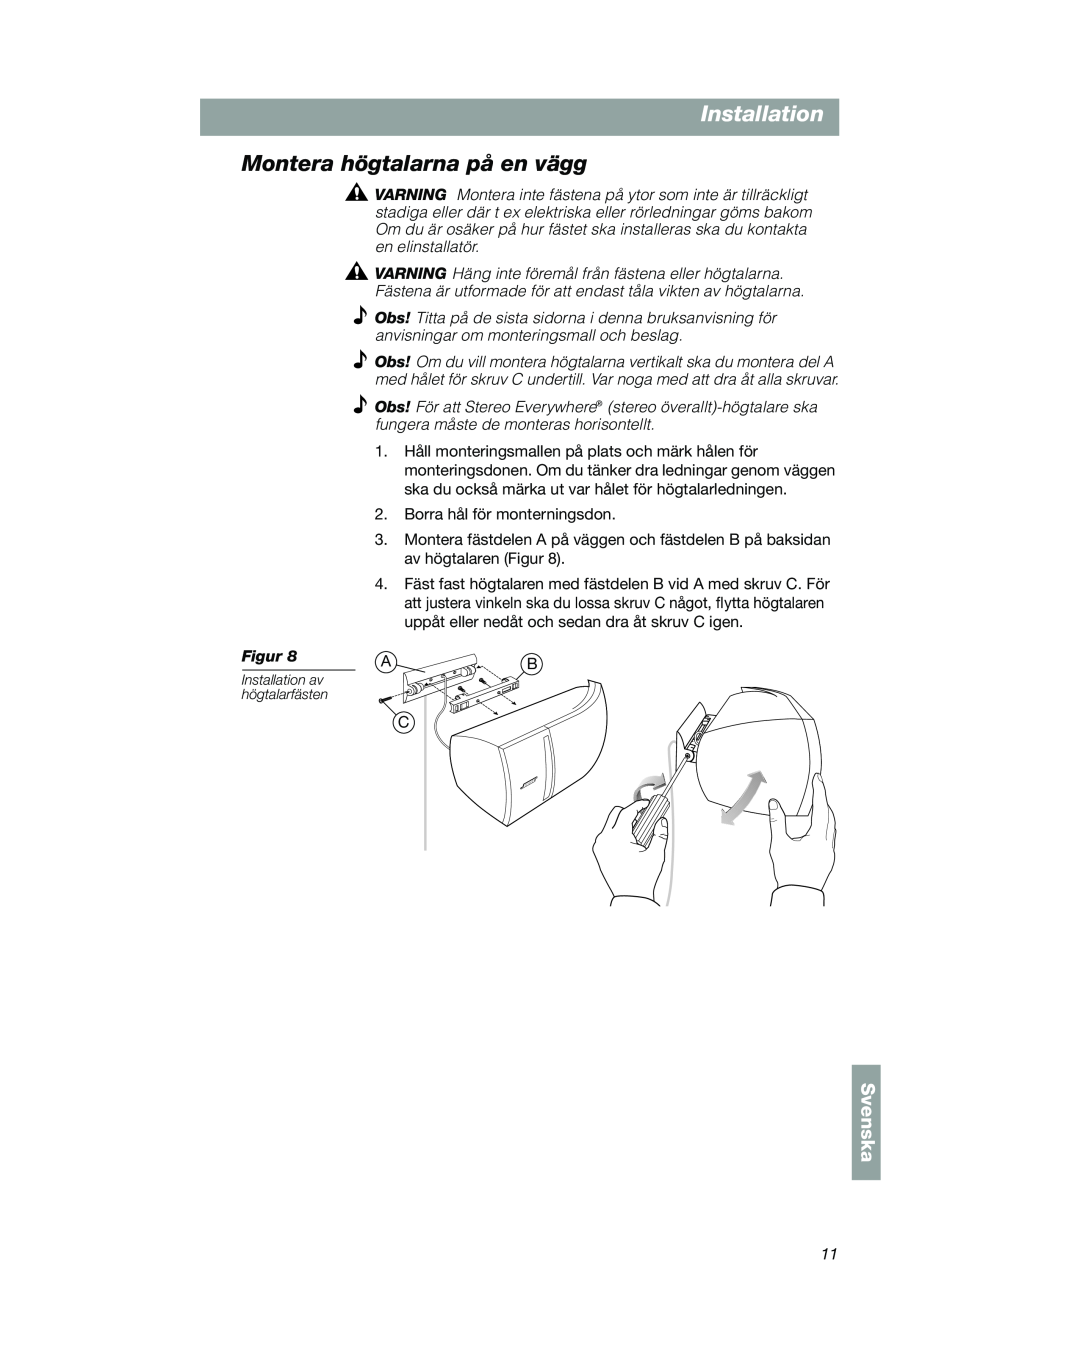 Bose VCS-10 manual Montera högtalarna på en vägg, Svenska, Installation av högtalarfästen 